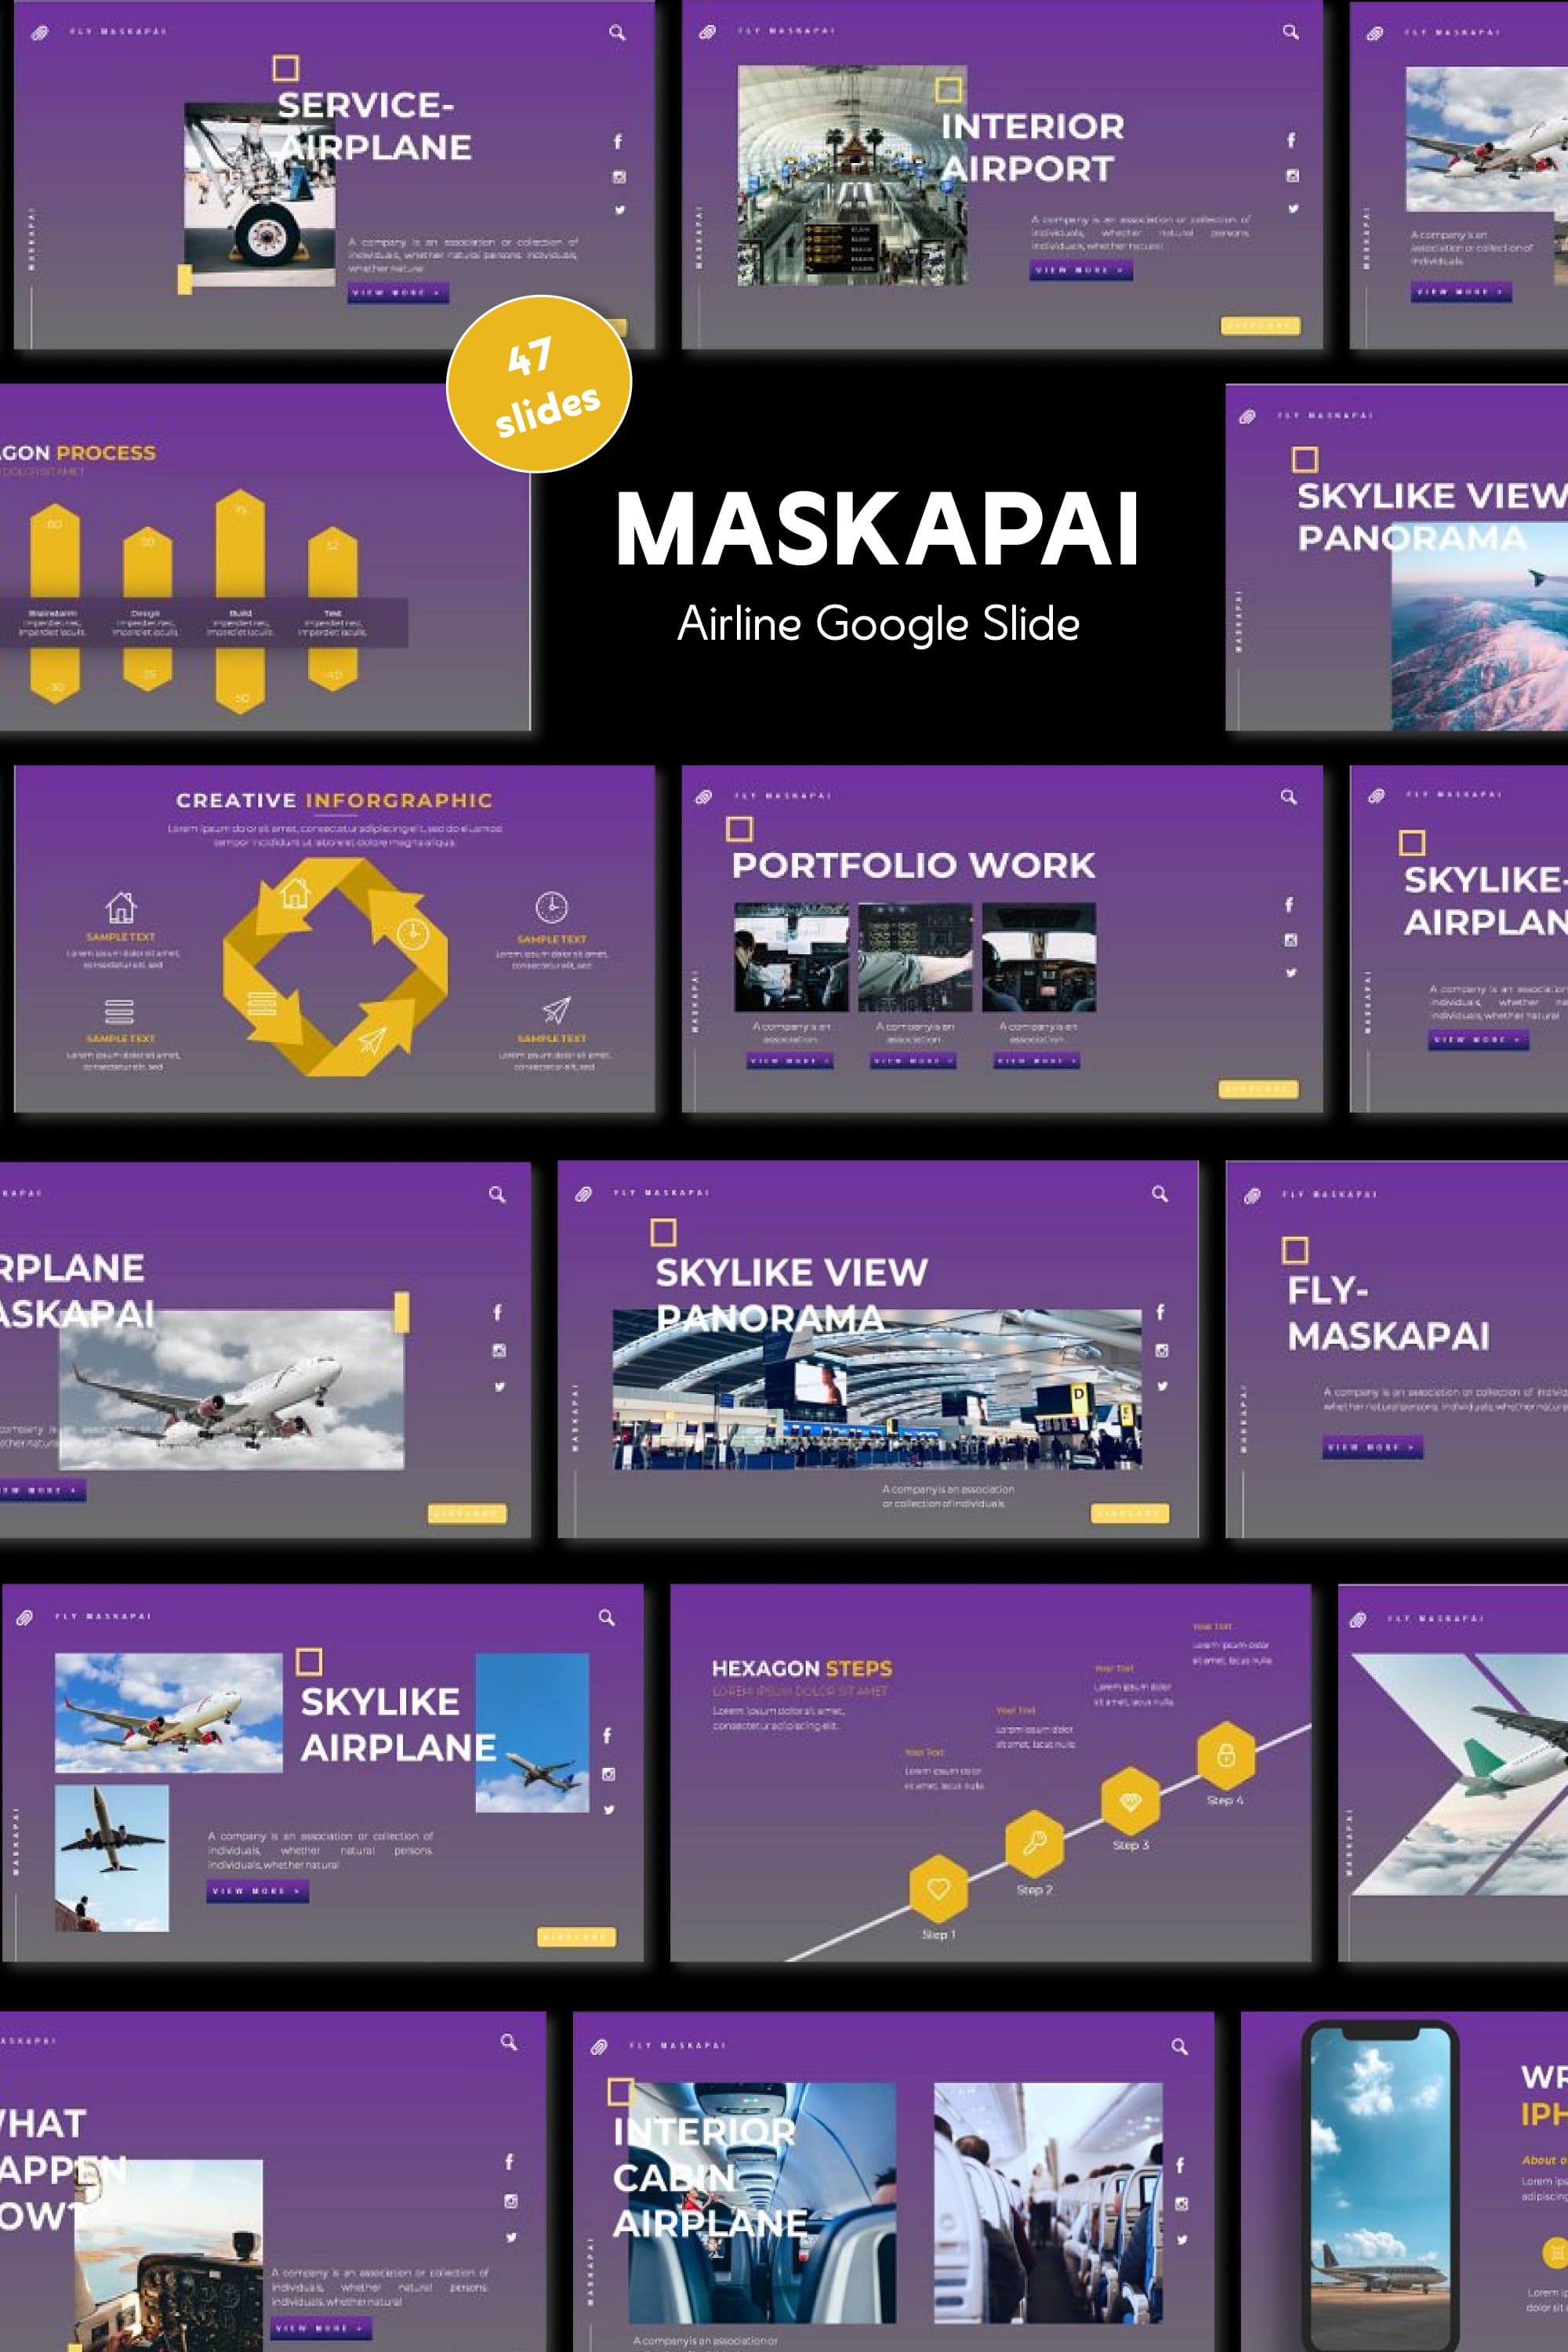 Maskapai airline google slide - pinterest image preview.